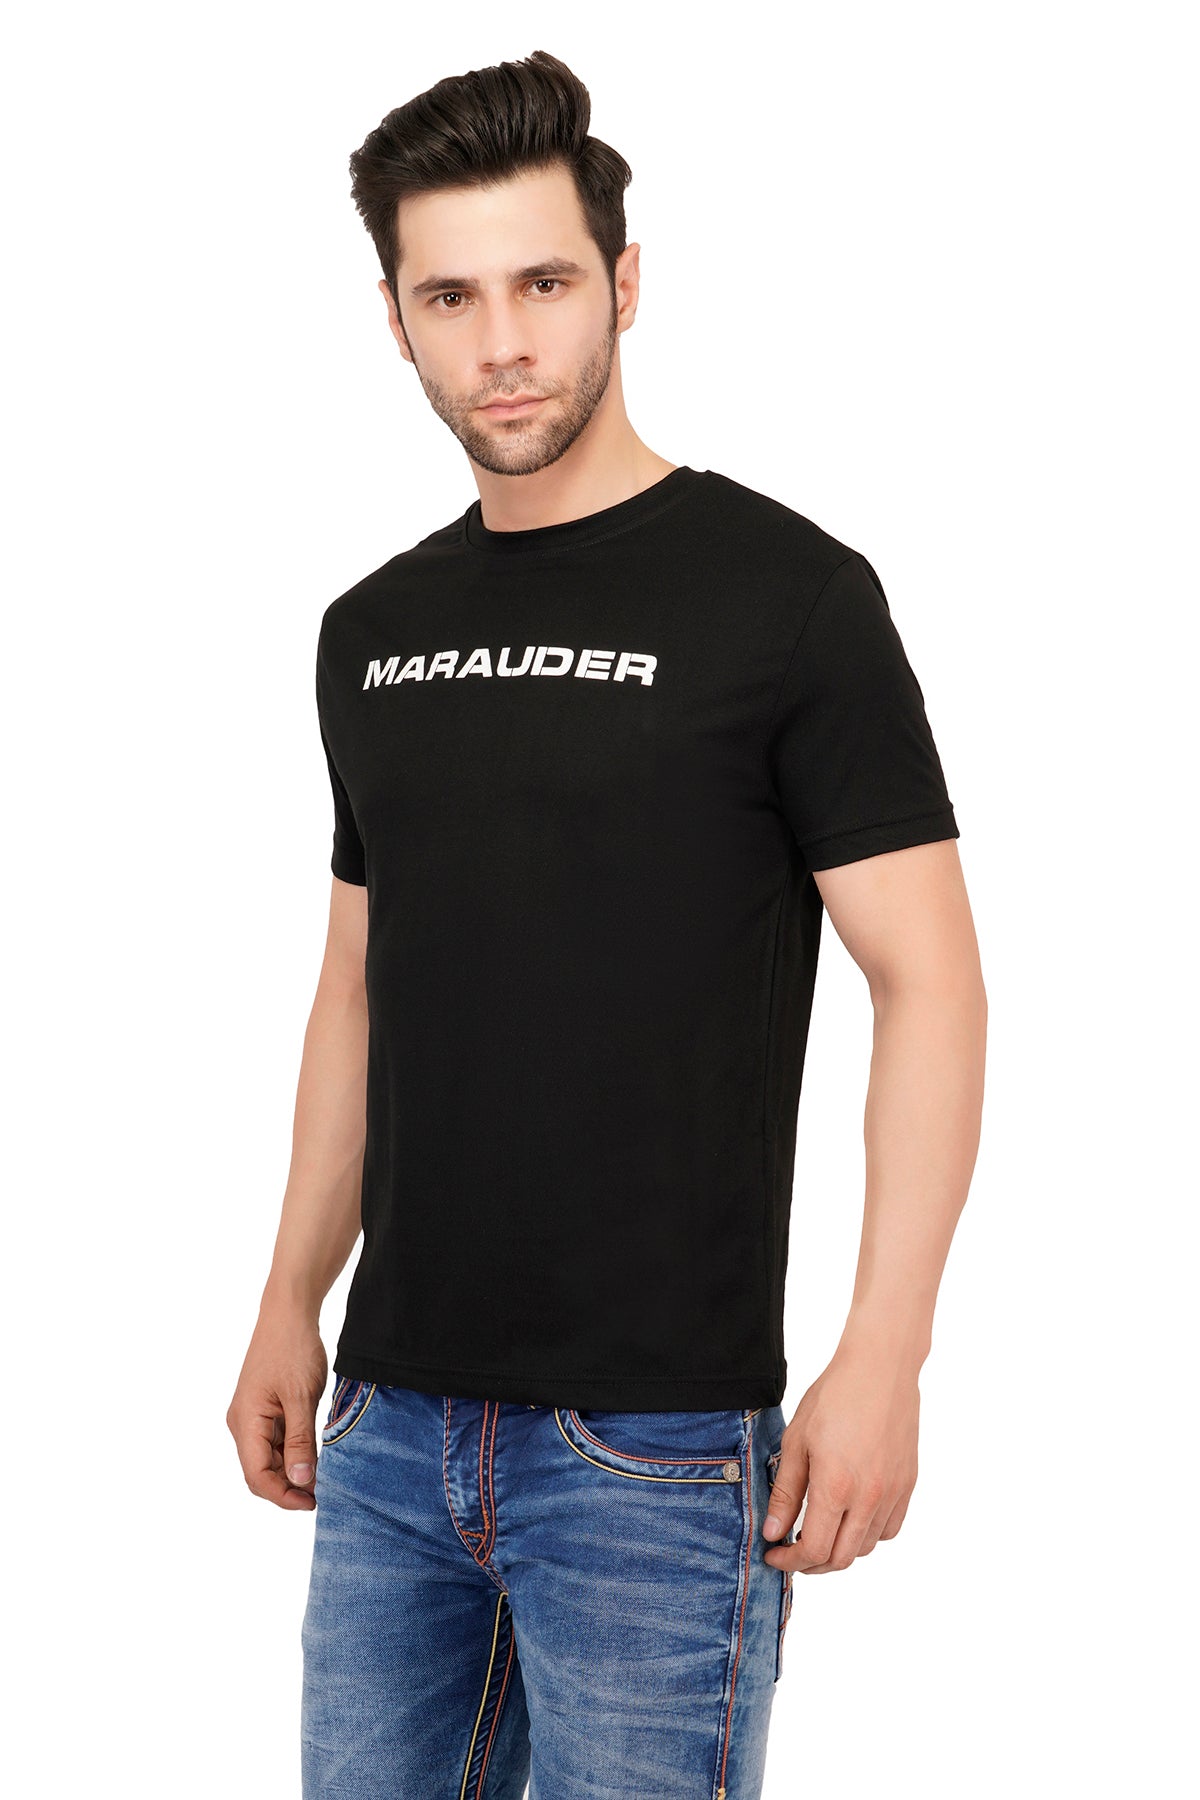 Men's MARAUDER cotton t-shirt